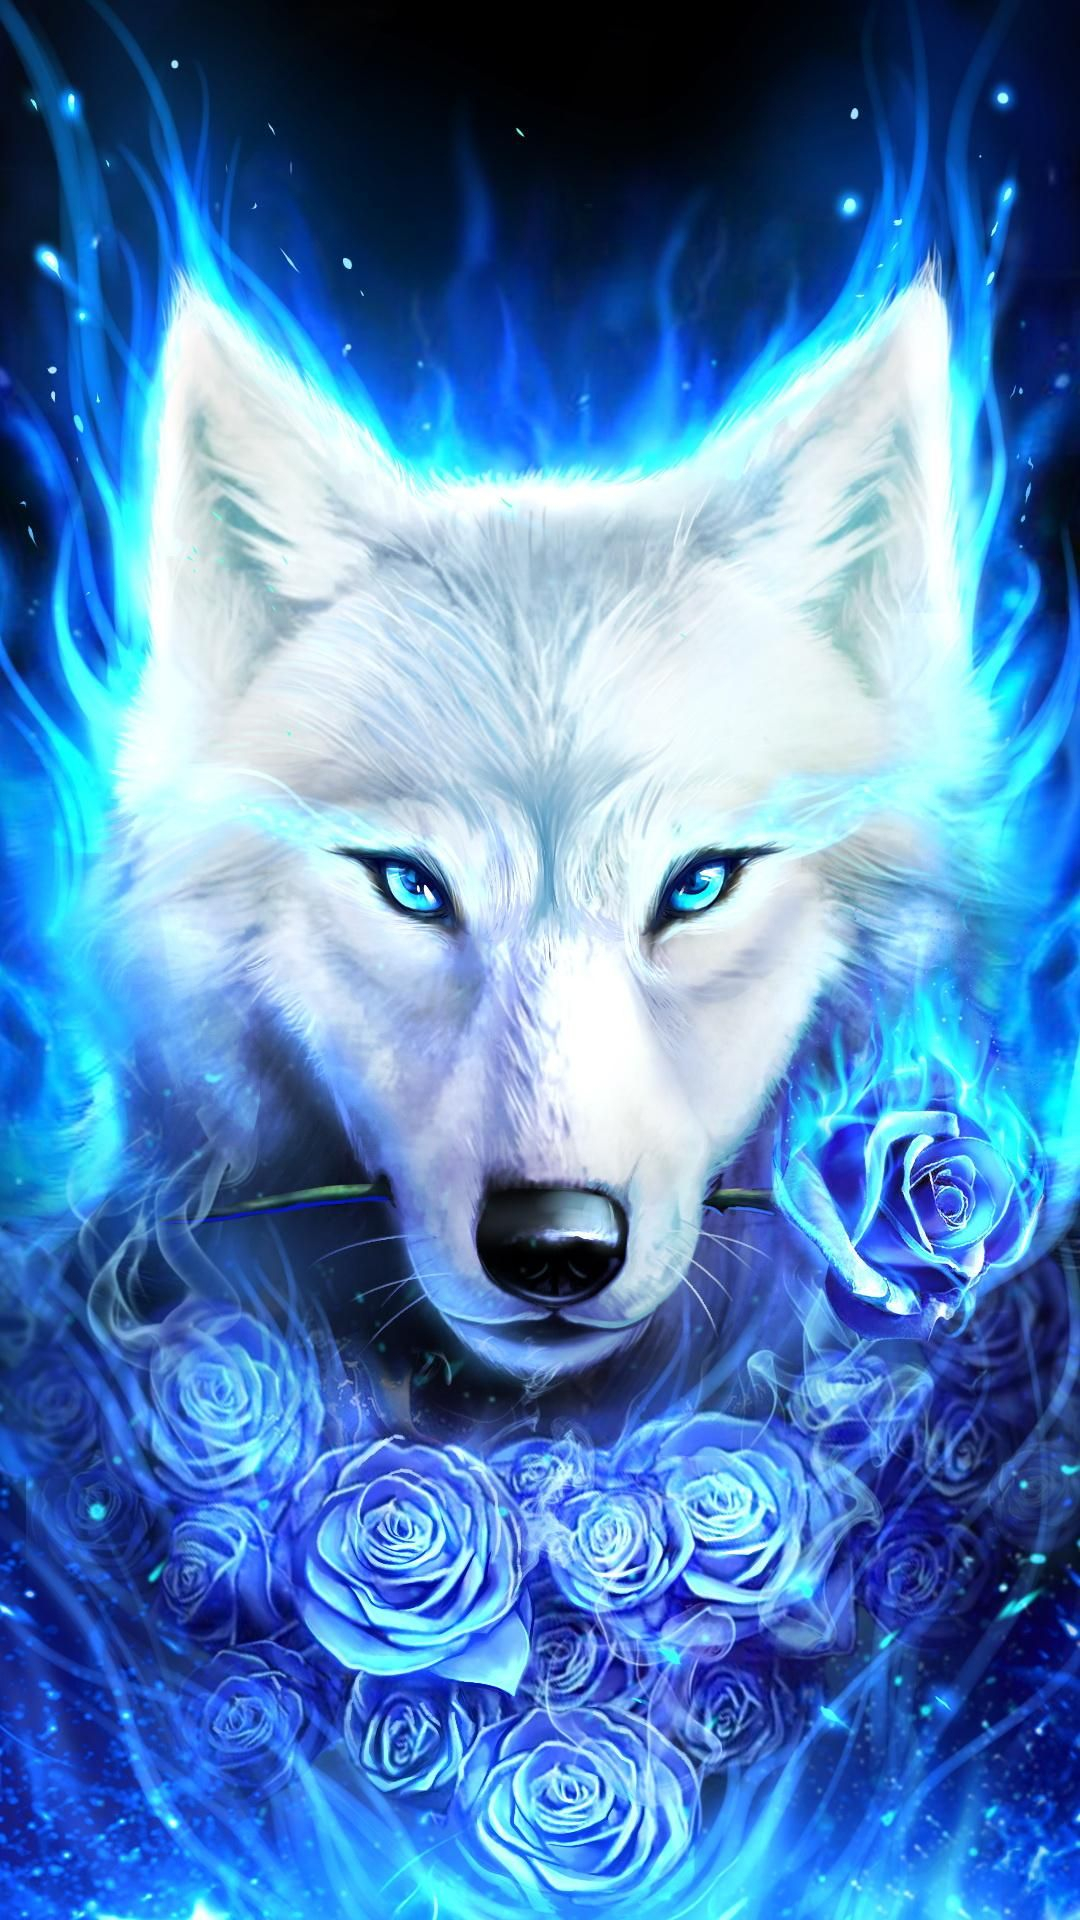 1080x1920 White wolf with rose | Wolf spirit animal, Fantasy wolf, Wolf spirit